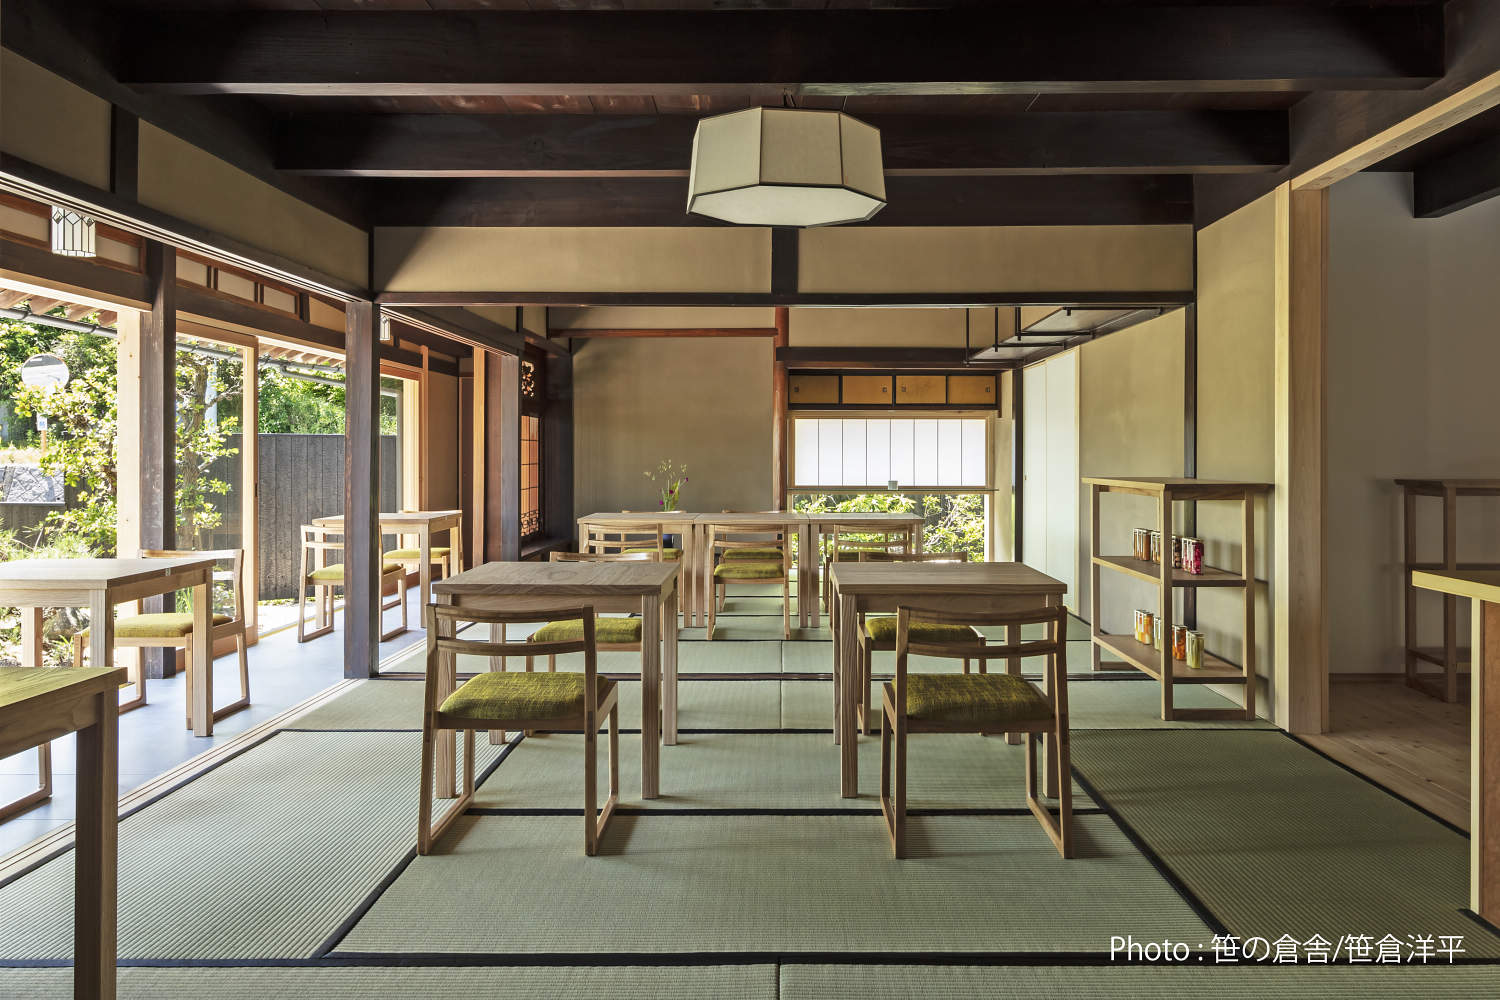 Japanese Plaster - Traditional Restaurant Design